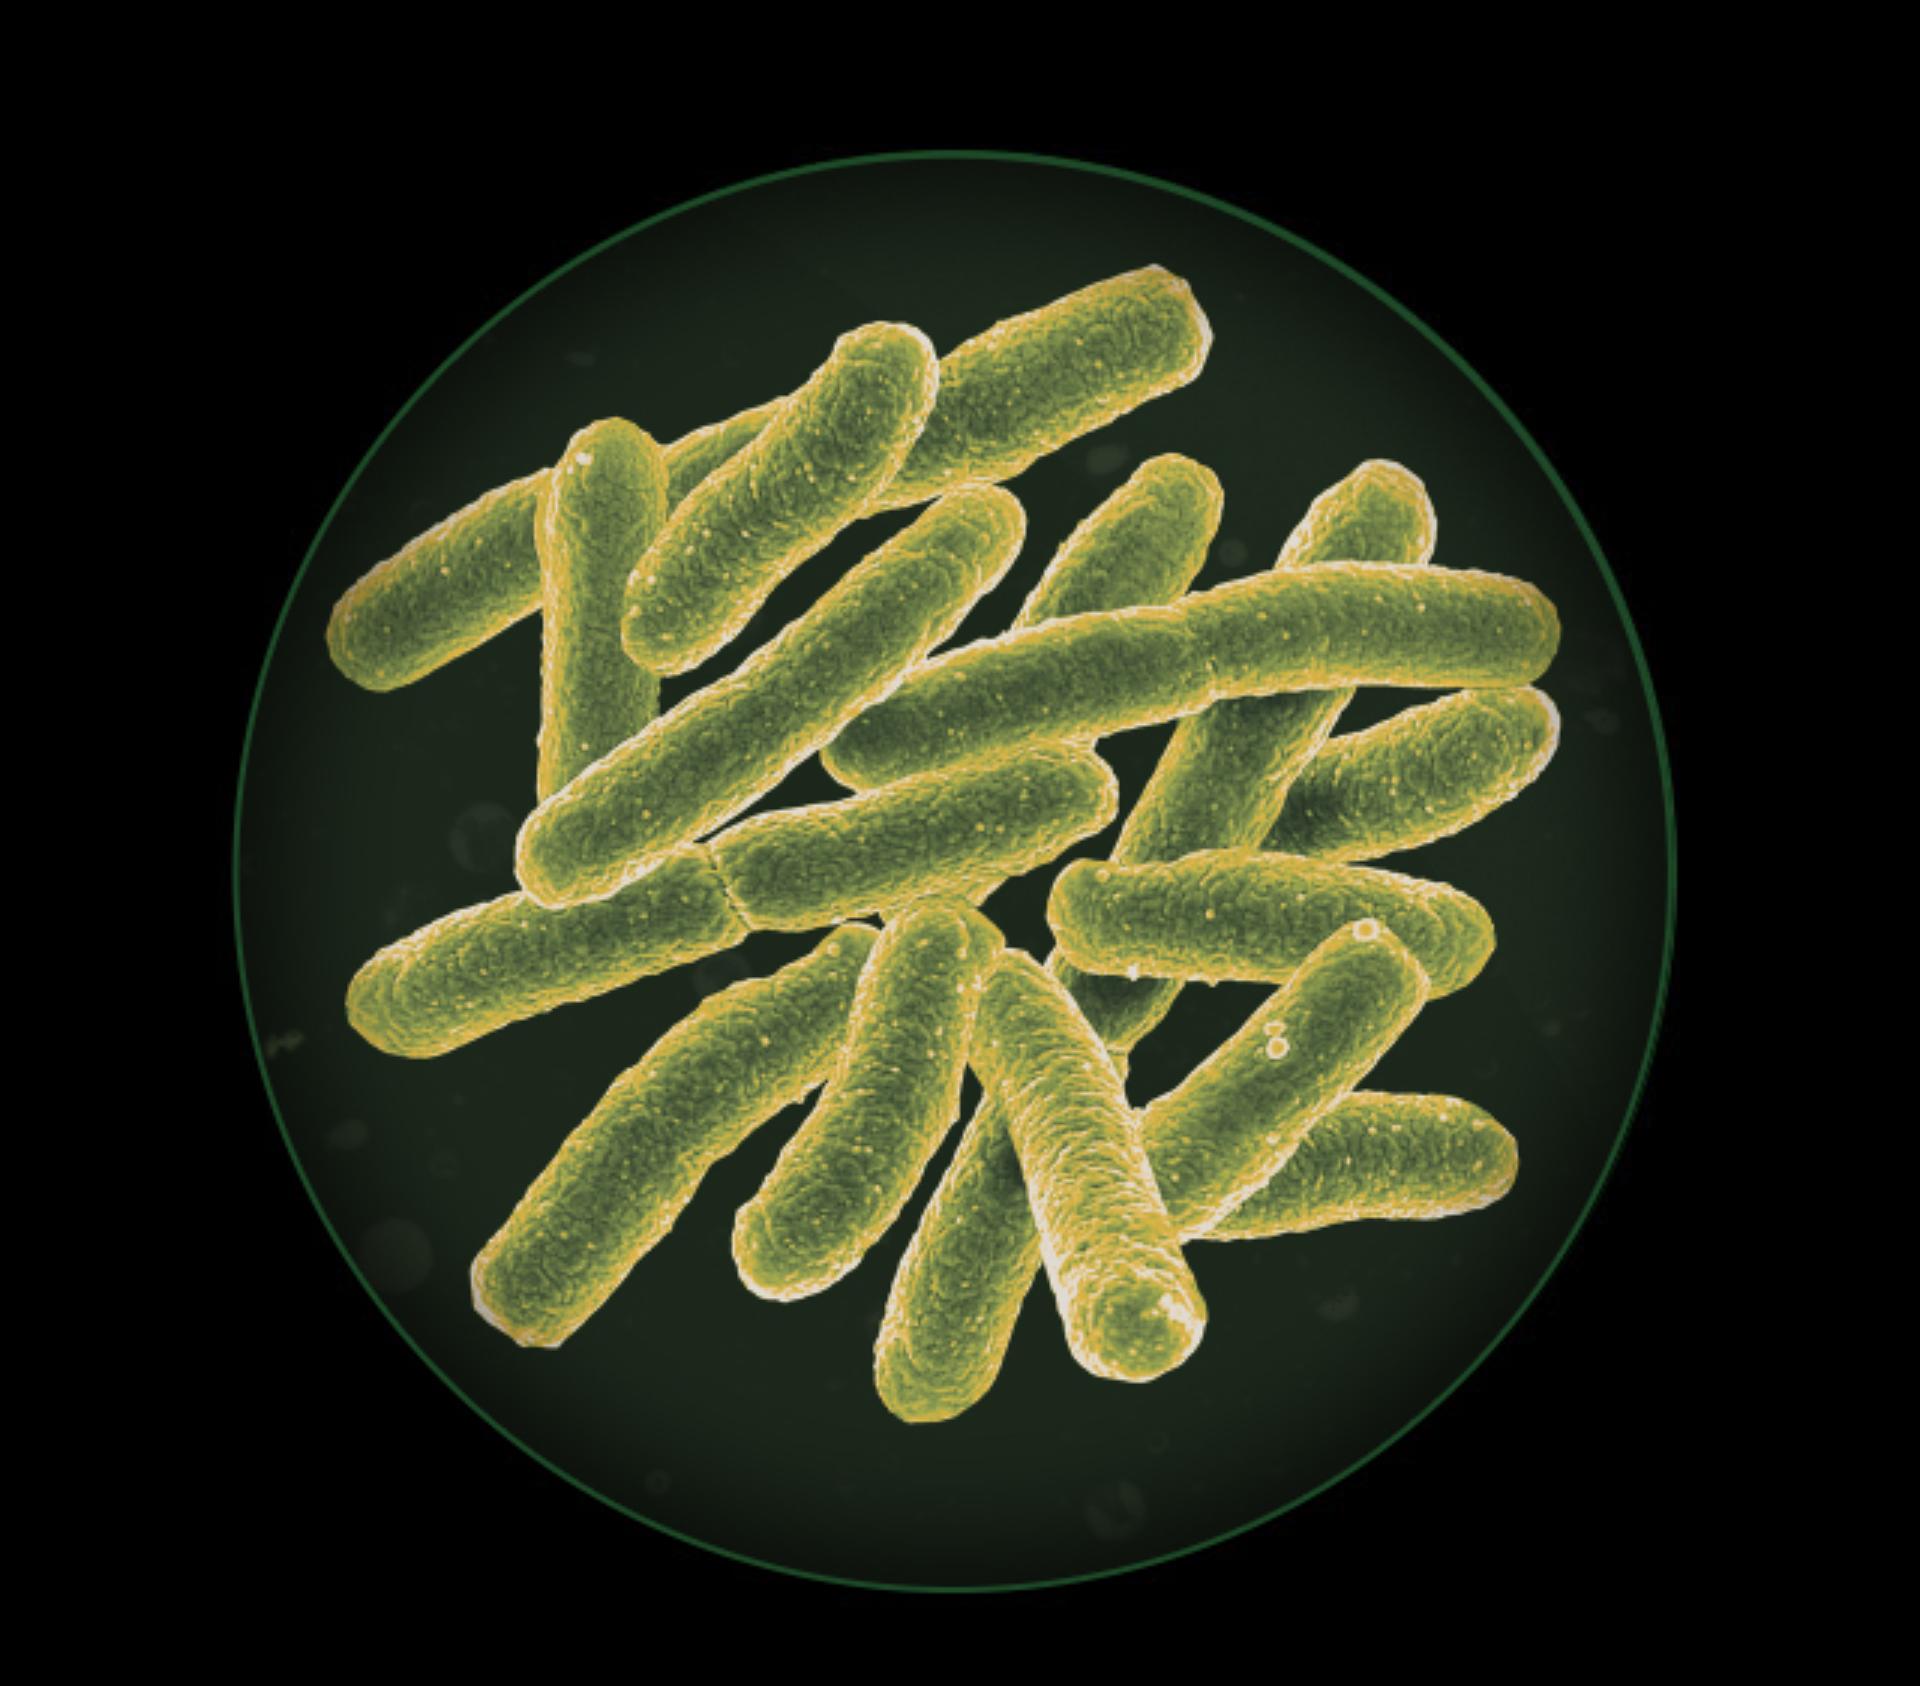 Bakterije